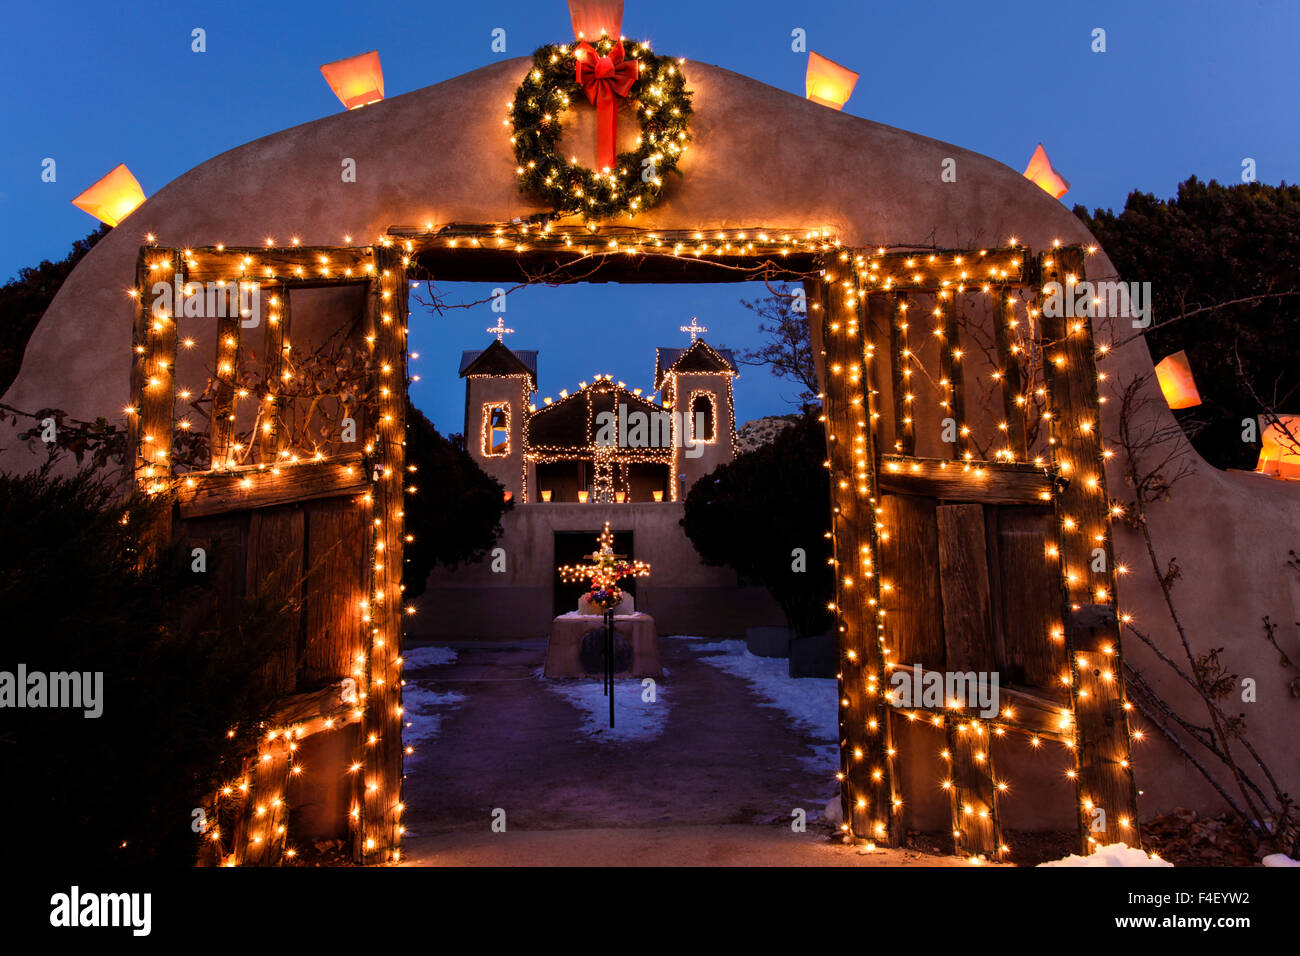 Chimayo, New Mexico, USA. Santurario de Chimayo lit up for Christmas. Stock Photo